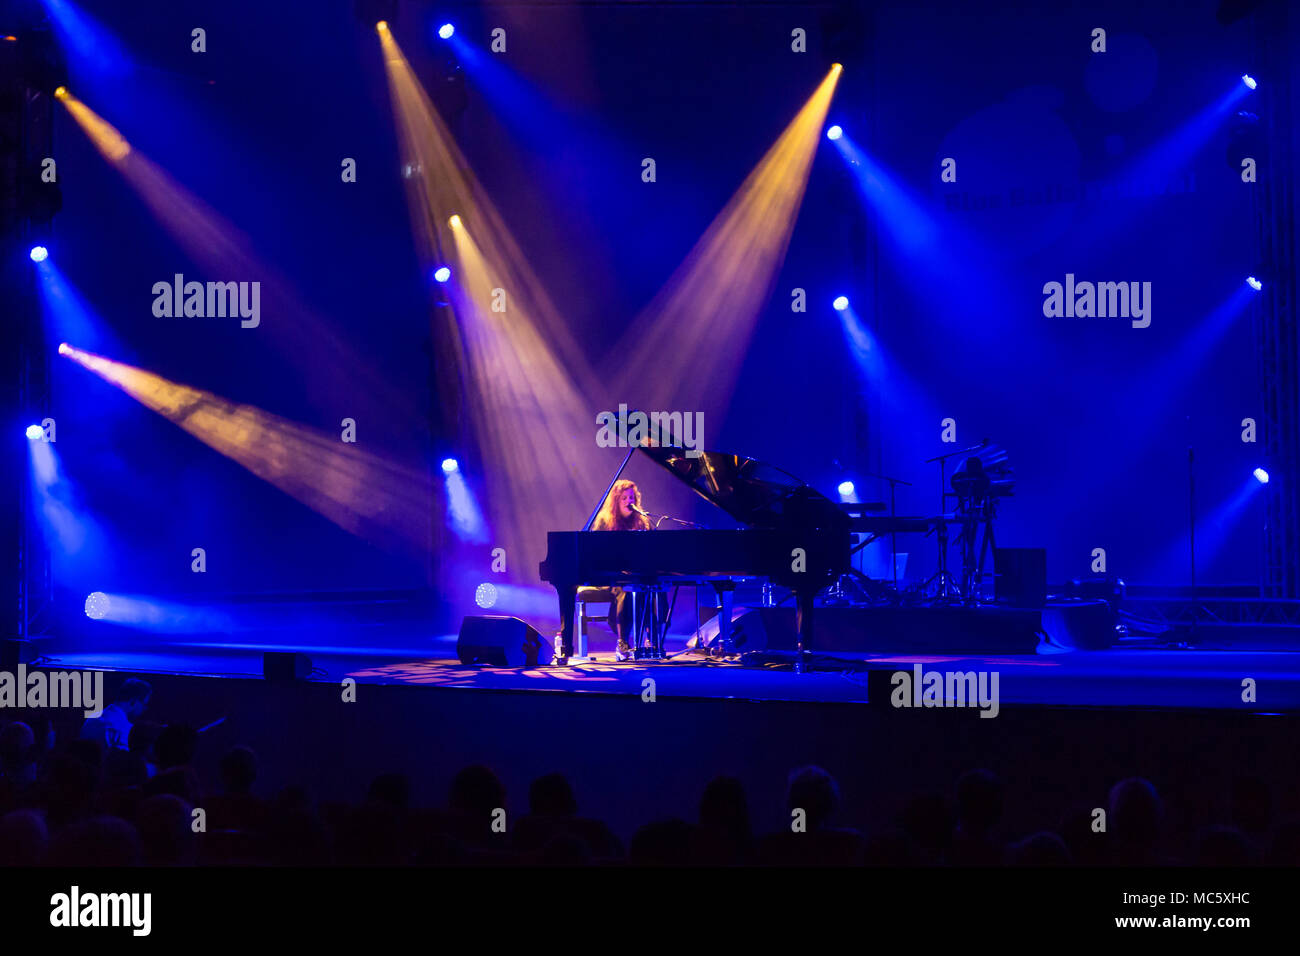 Der britische Sänger und Songwriter Frances auf dem Concert Grand Piano live am Blue Balls Festival Luzern, Schweiz Stockfoto